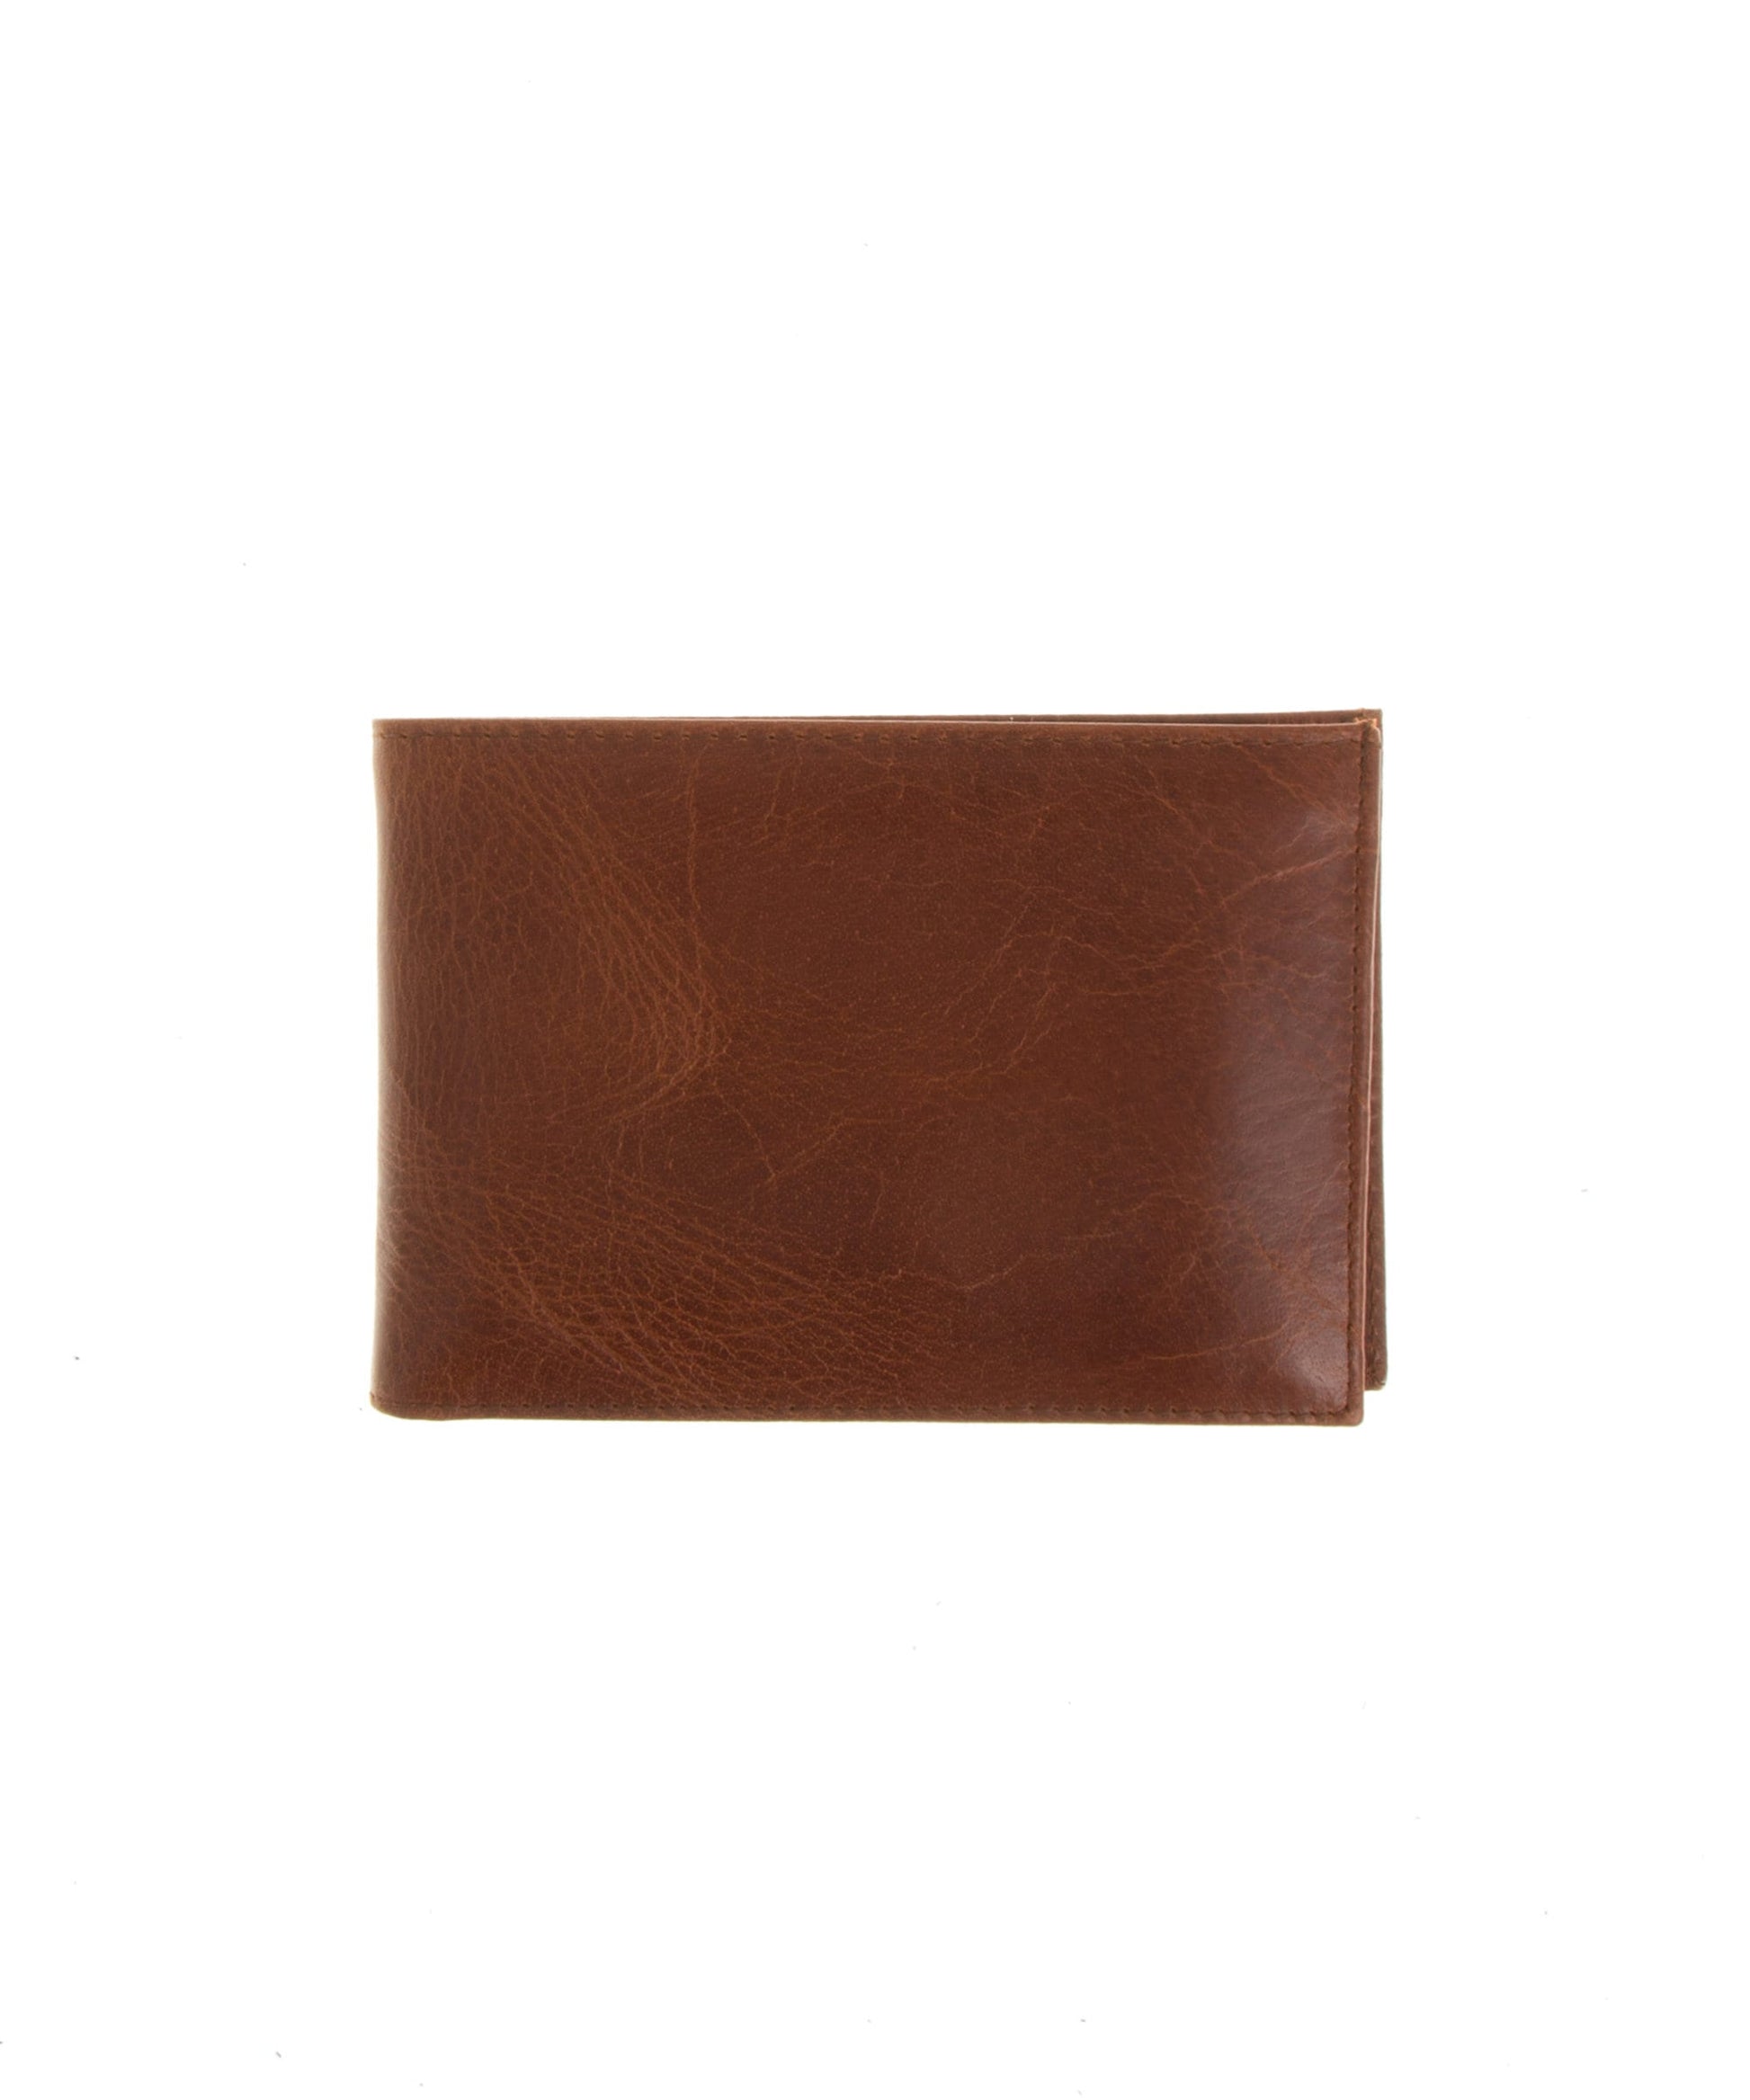 Leather wallet mens handmade, Full grain leather wallet mens, Bifold leather wallet, Waxed brown leather wallet, Small leather wallet